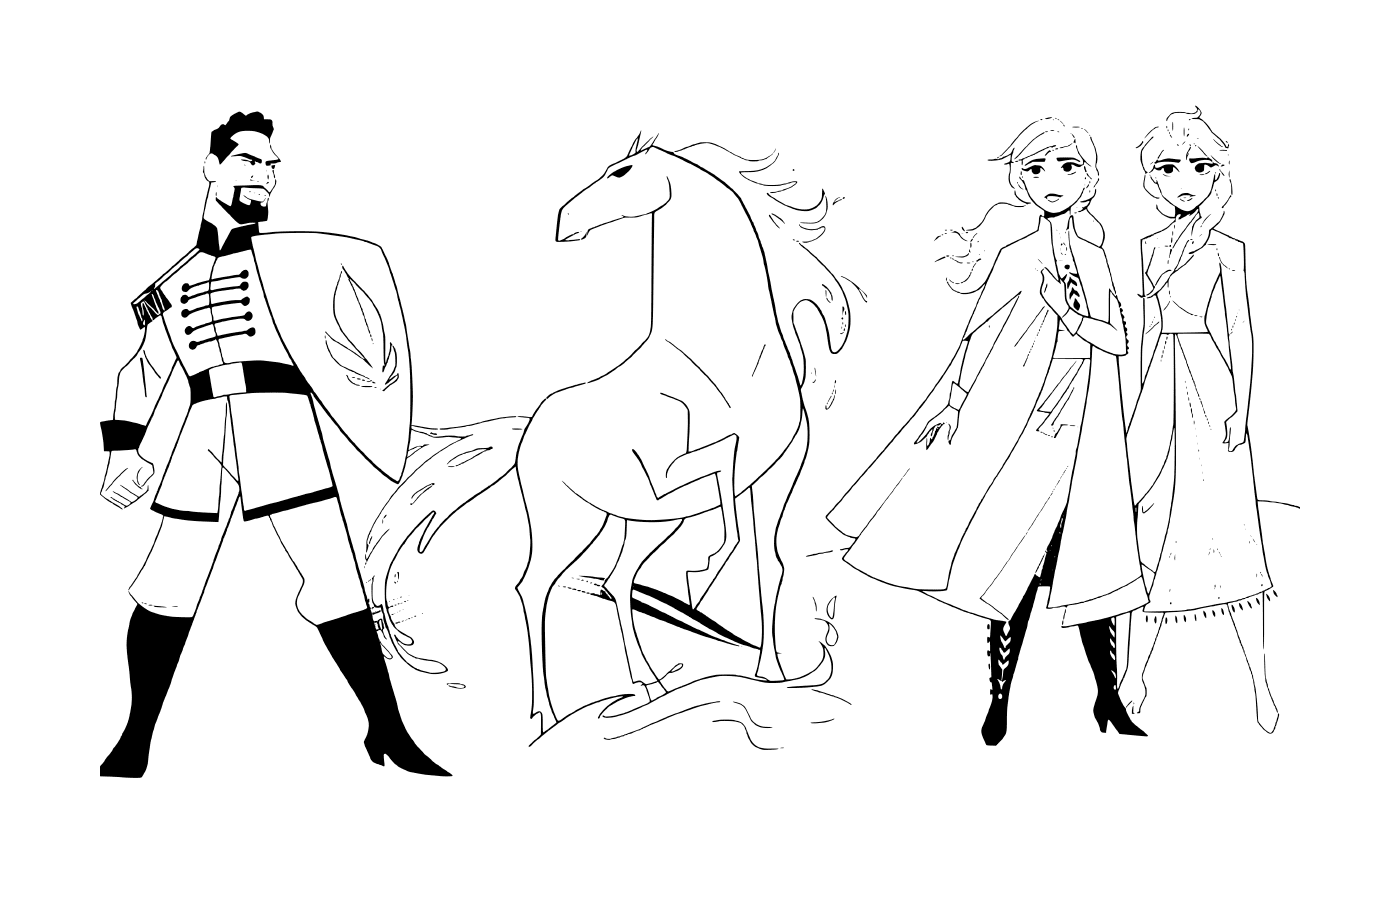  Anna und Elsa mit dem Nokk Pferd gegen Leutnant Mattias von der Schneekönigin 2 